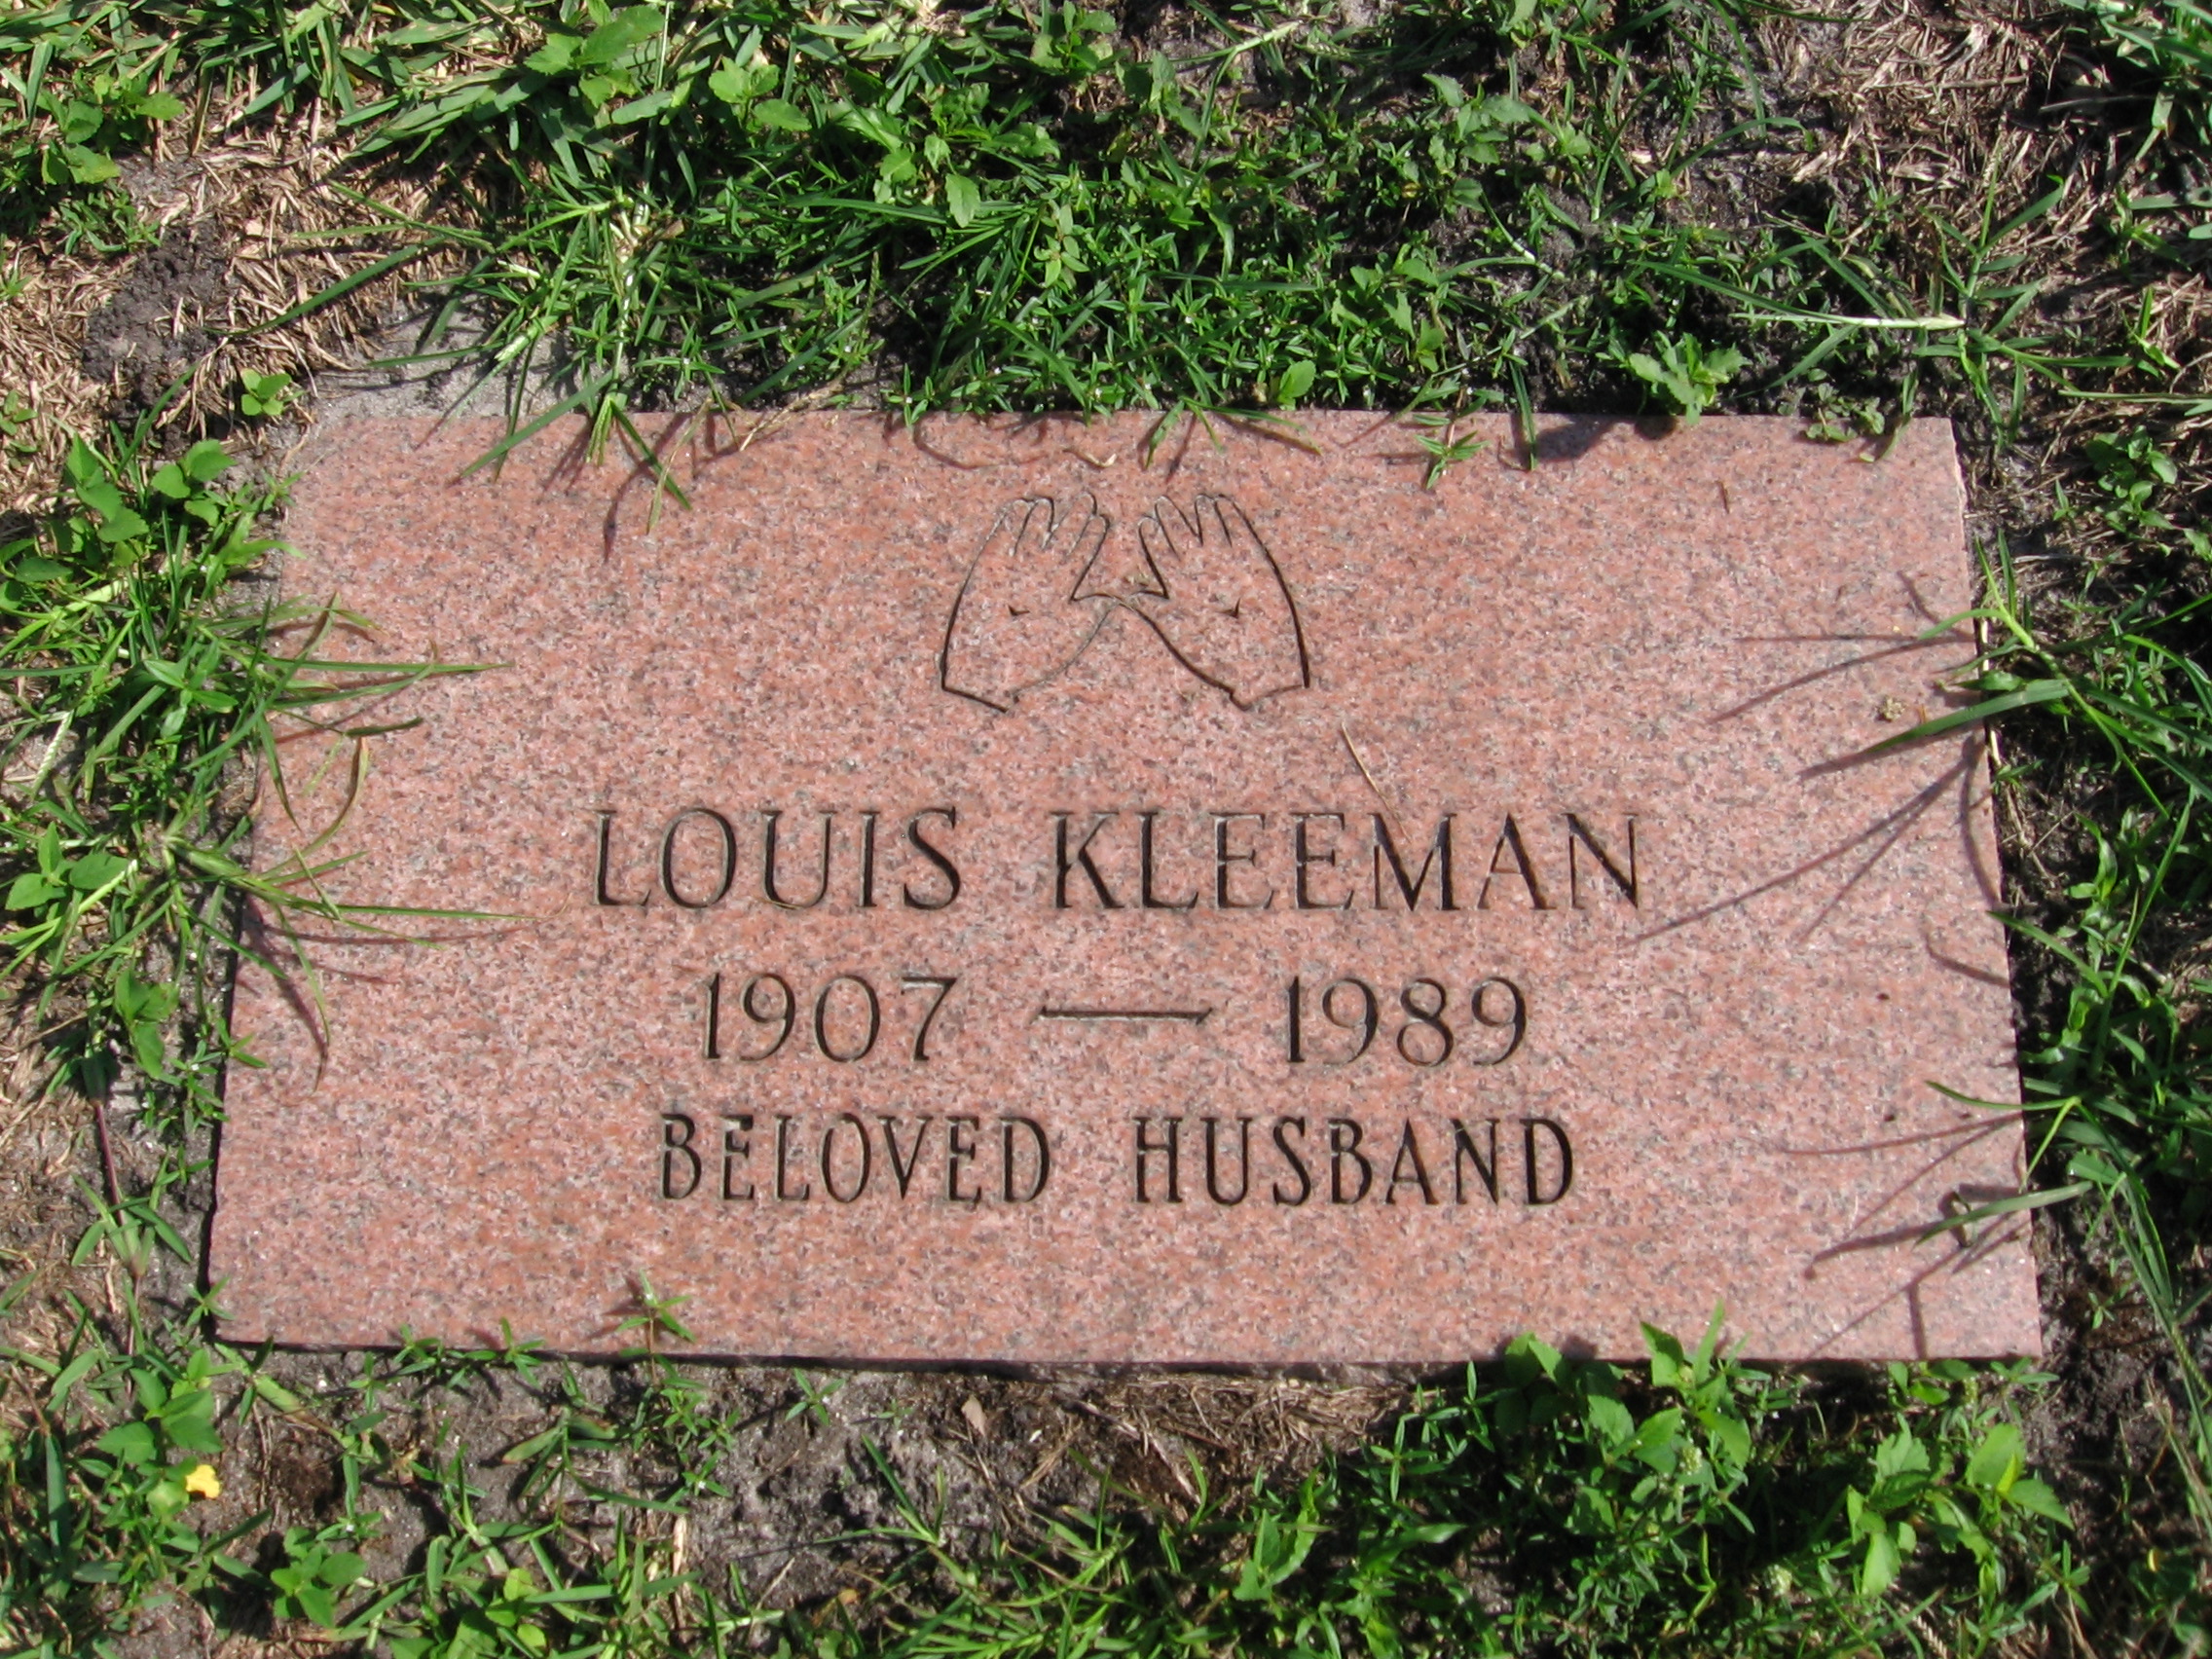 Louis Kleeman